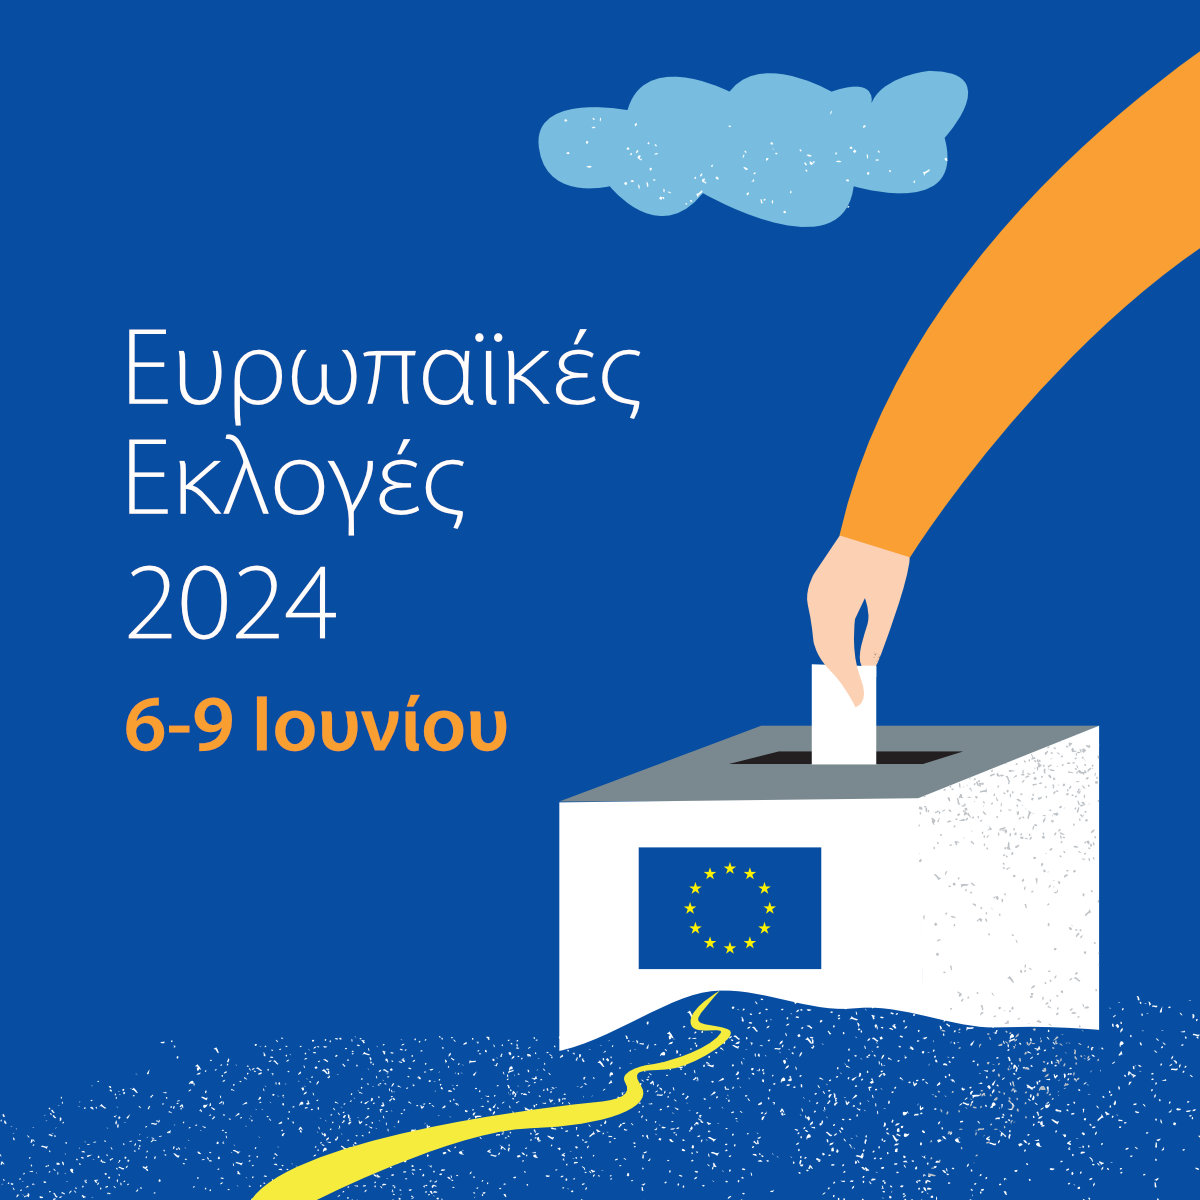 Ευρωπαϊκές Eκλογές 2024 - Square.jpg